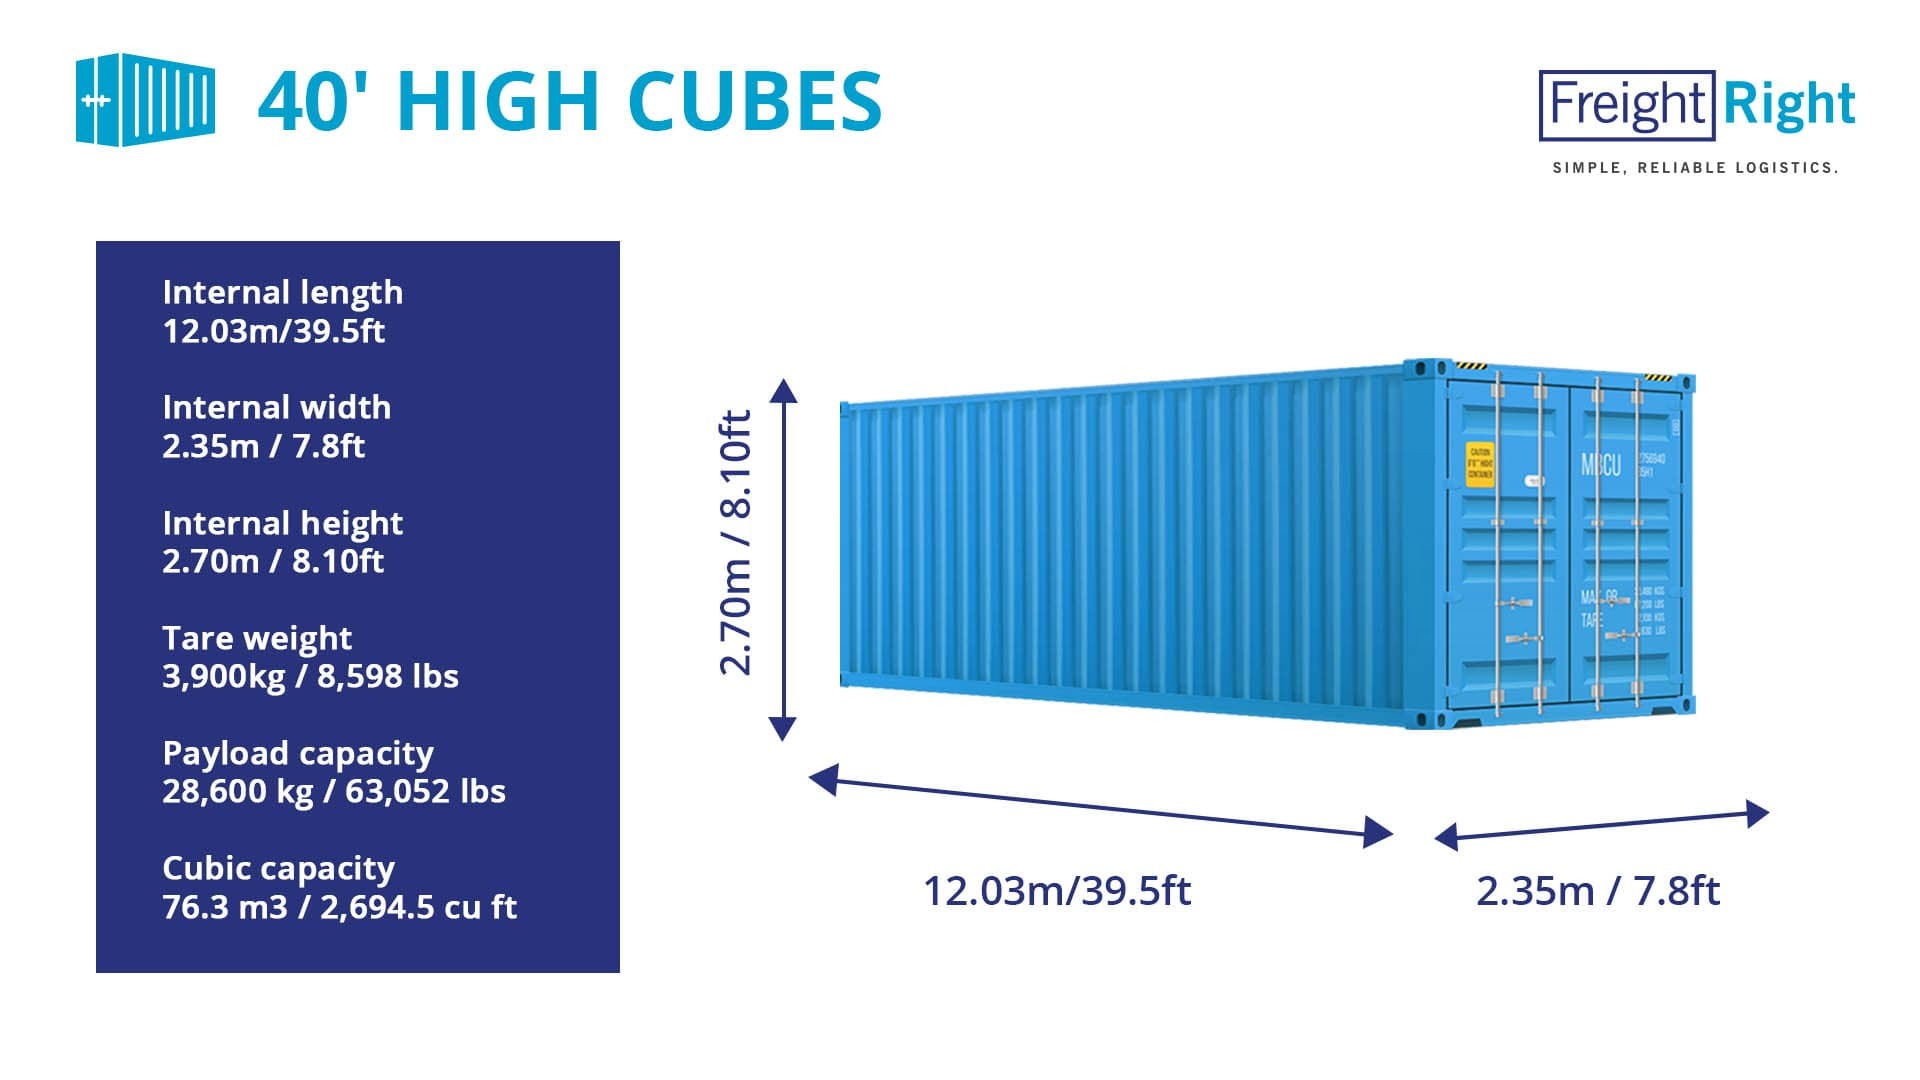 Размер 40 футового контейнера в метрах внутри. Контейнер 40 HC/hq (High Cube). Контейнер 40 фут Хай Кьюб размер. Габариты 40 фут контейнера High Cube. Размеры морского контейнера 40 футов High Cube.